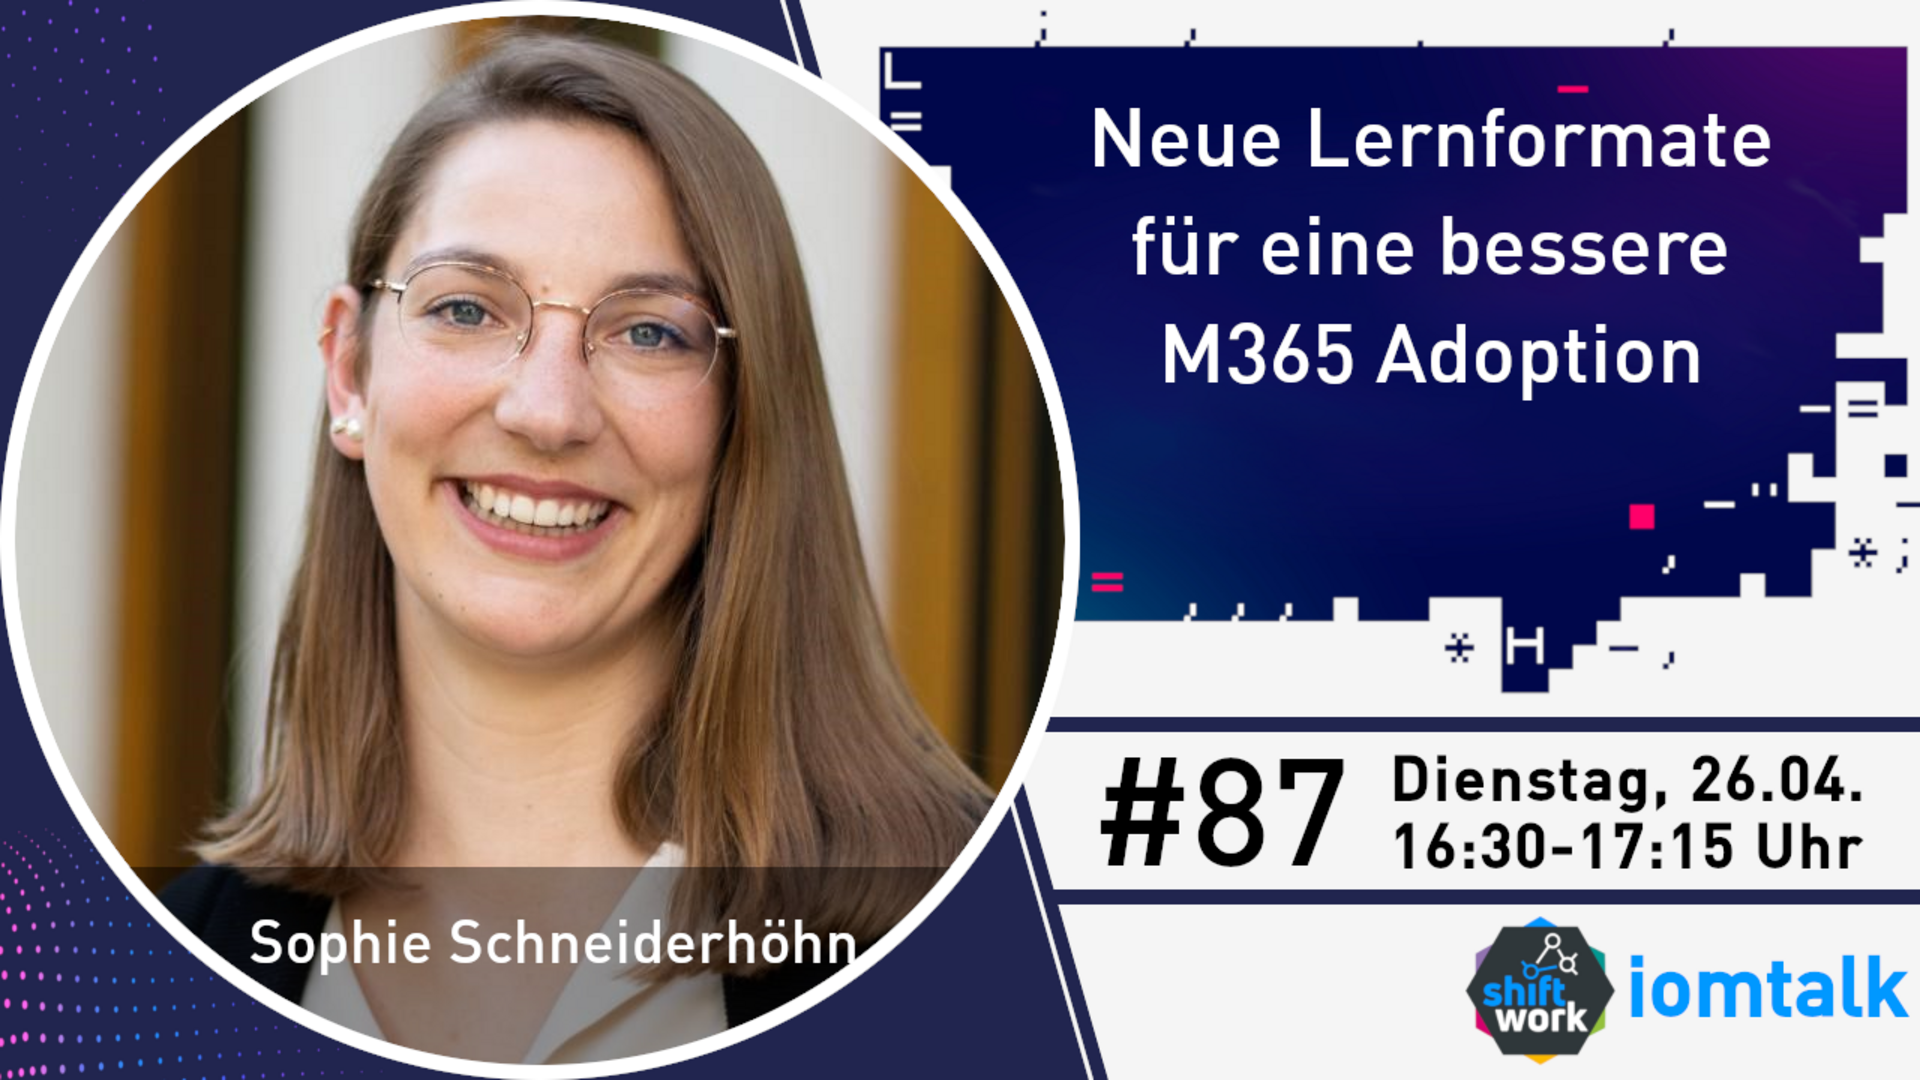 Im Gespräch mit Sophie Schneiderhöhn zu neuen Lernformaten für eine bessere M365 Adoption